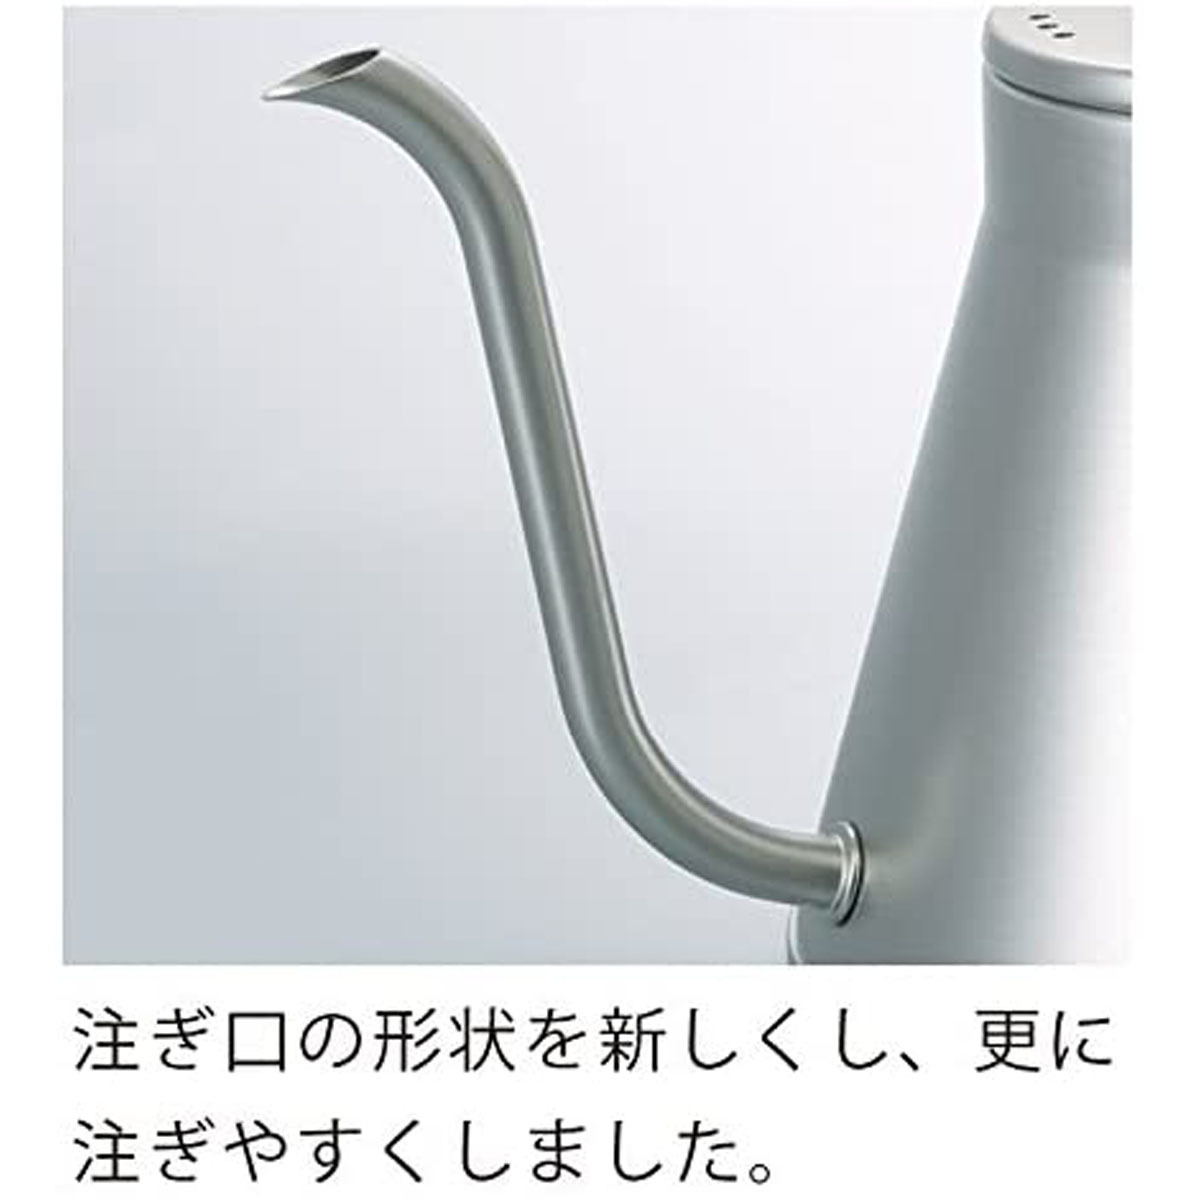 日本製ドリップケトル コーヒーケトル ステンレス 蓋付き ガス・IH対応 シンプル 800ml シルバー 注ぎやすい口形状・ハンドル形状